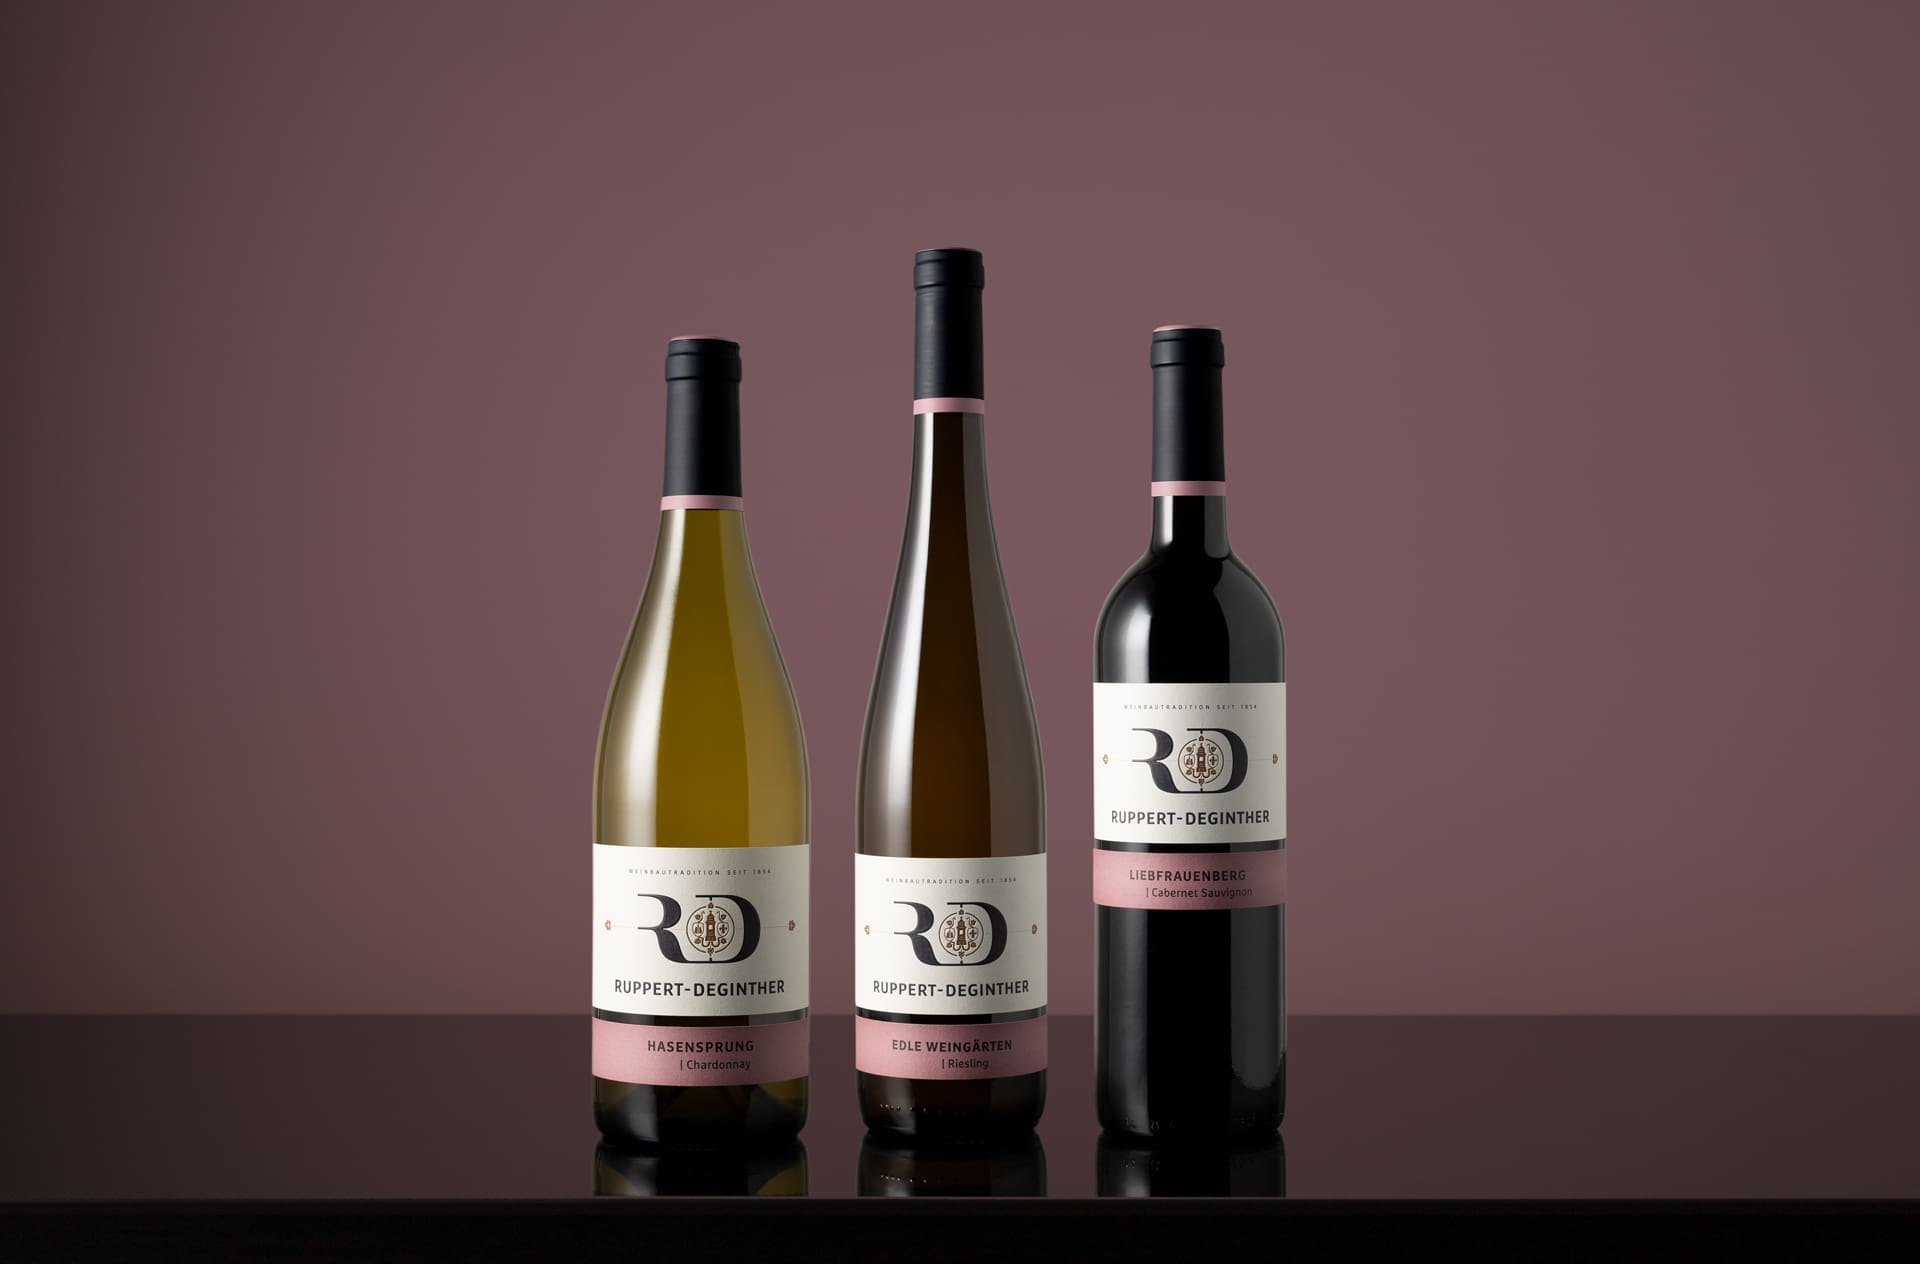 Corporate Identity Design für Ruppert-Deginther | Ein ausgezeichnetes Weingut in Rheinhessen | Produkt-Fotoshooting der Lagenweine